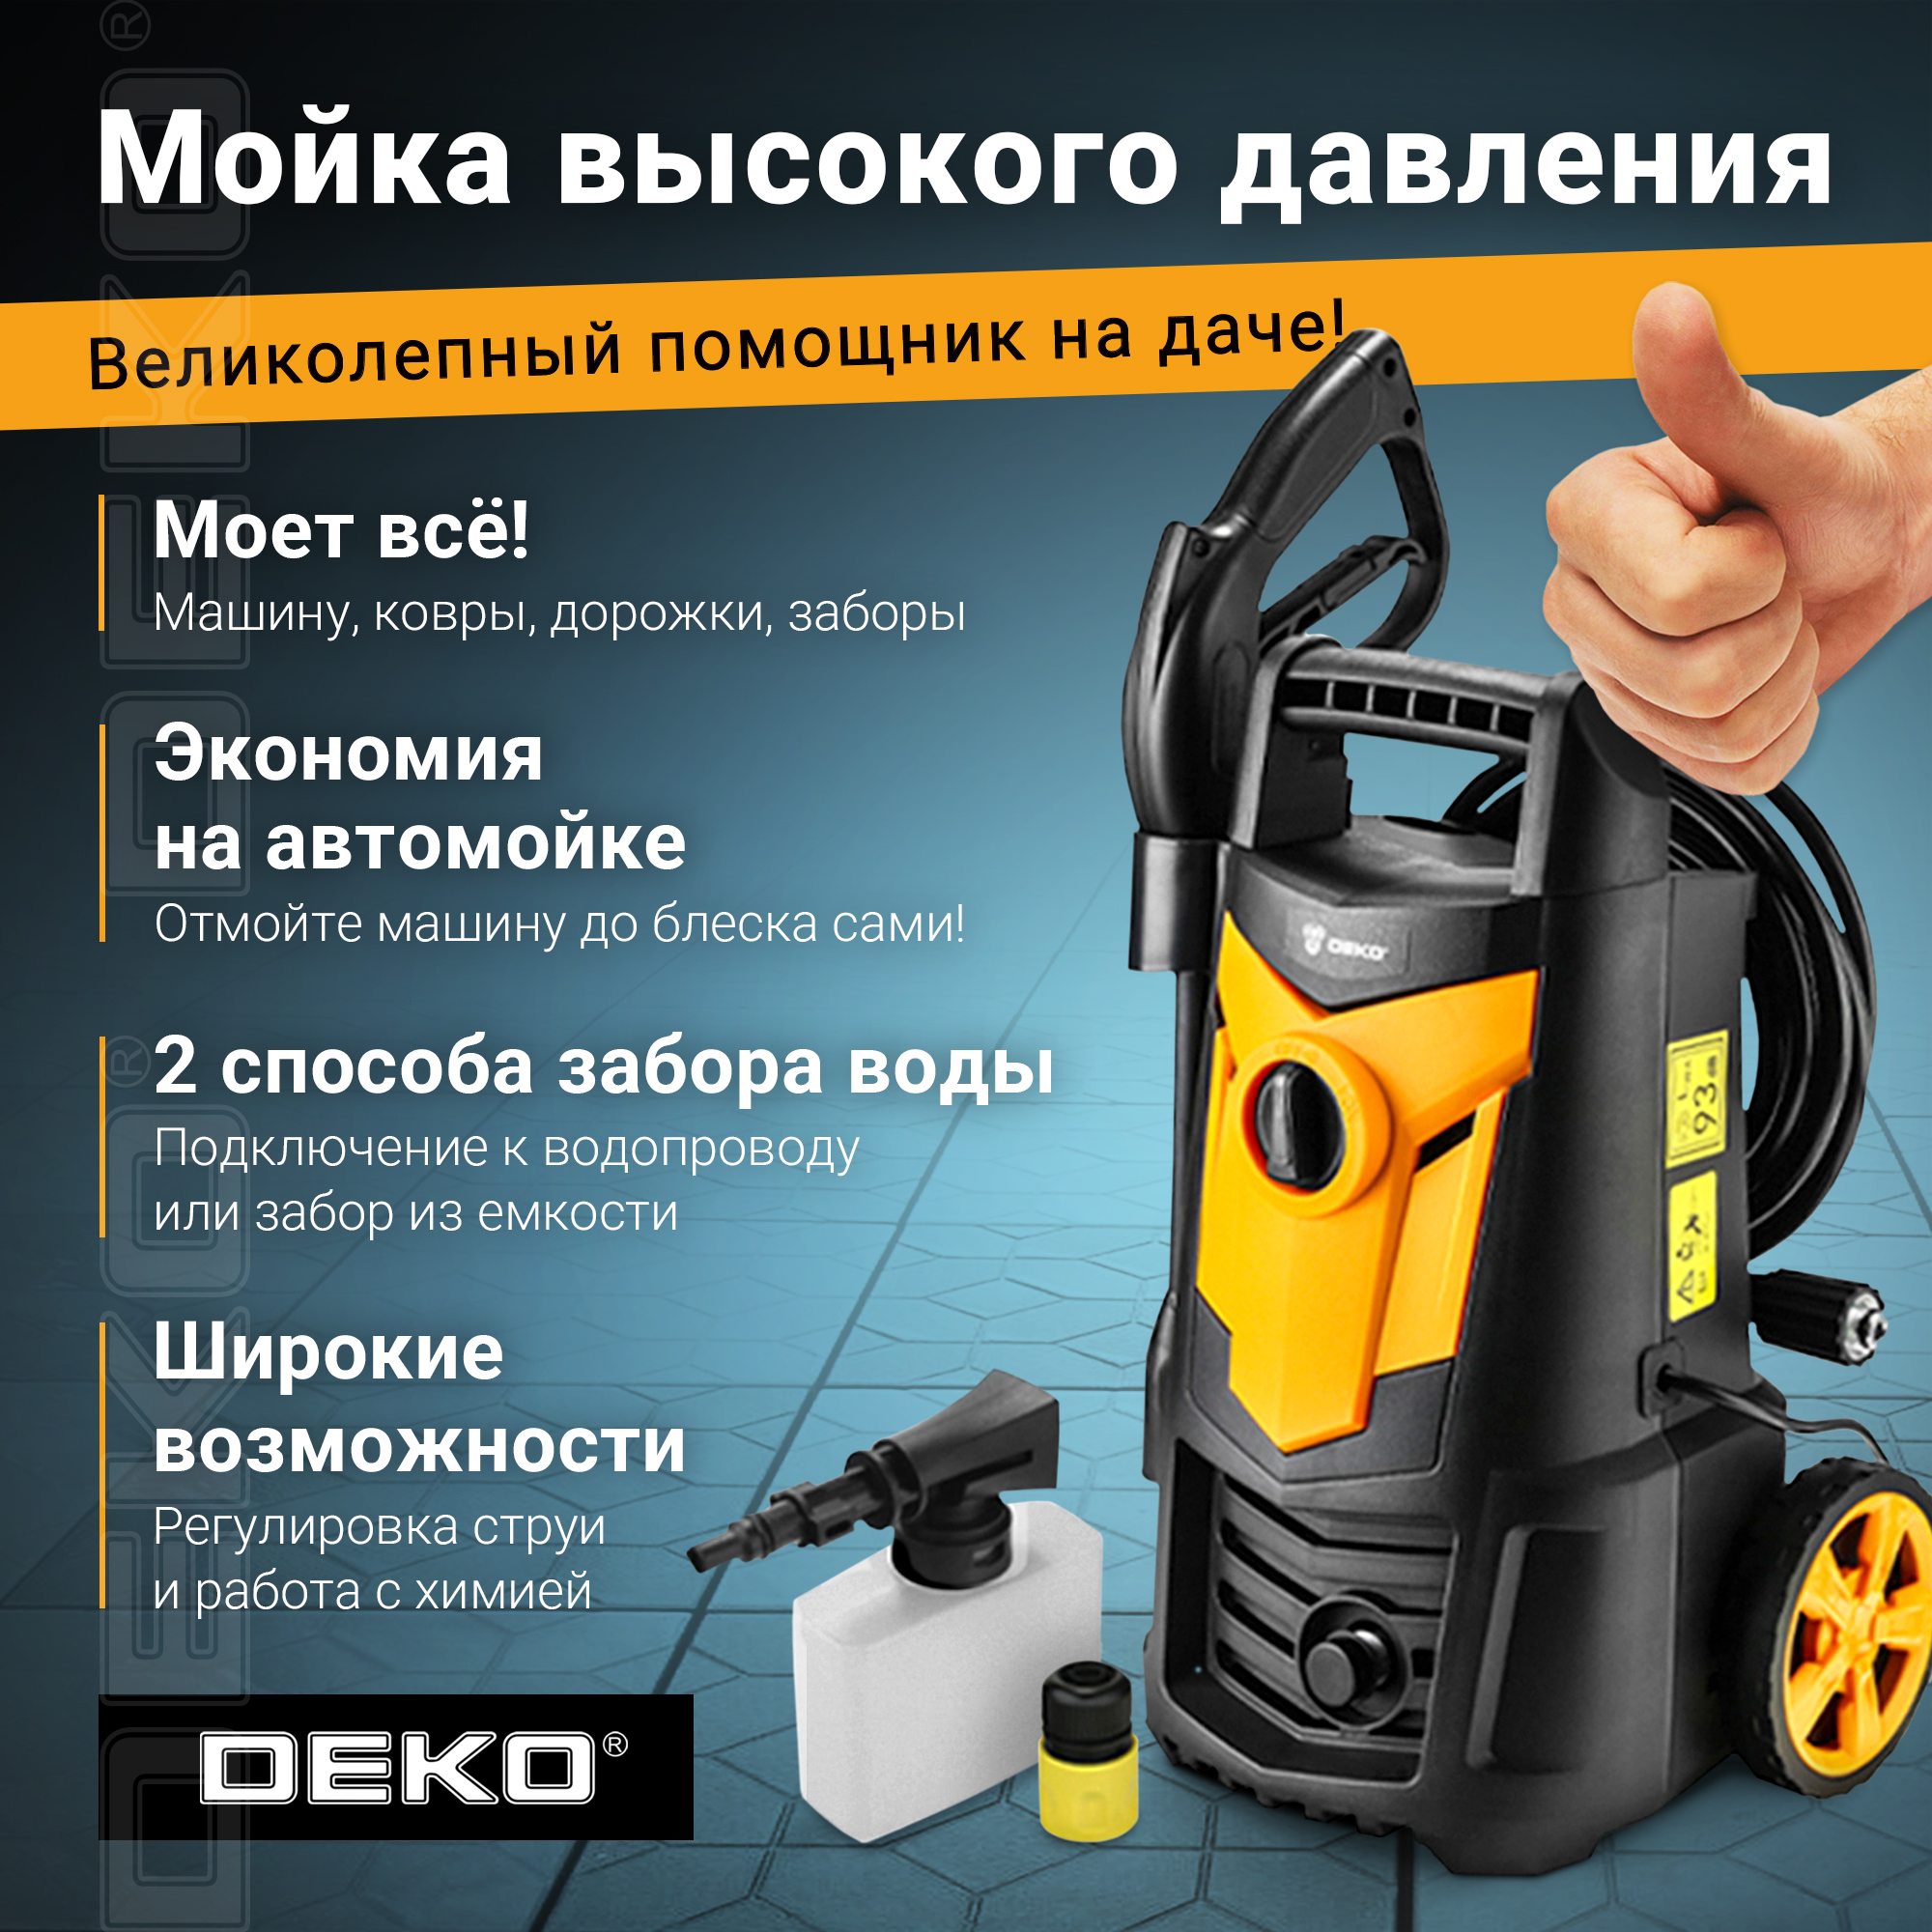 Электрическая мойка высокого давления DEKO DKCW140 063-4302 1700 Вт - купить в Москве, цены на Мегамаркет | 600006619517